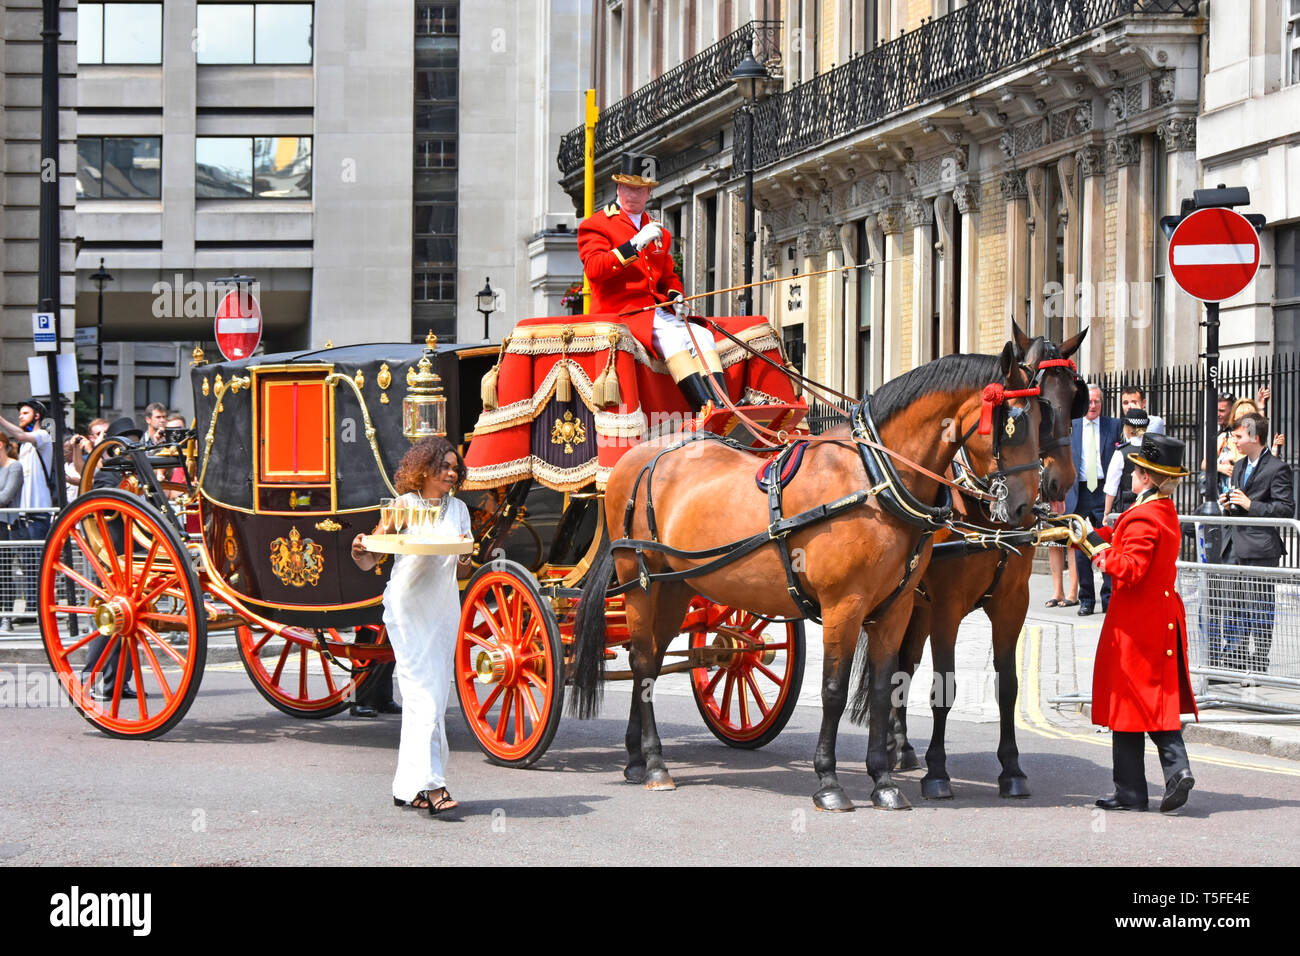 Un cavallo disegnato membro Landaus carrello in attesa in Admiralty Arch con cocchiere & fante tenendo rinfreschi su estati calde giorno London street scene UK Foto Stock